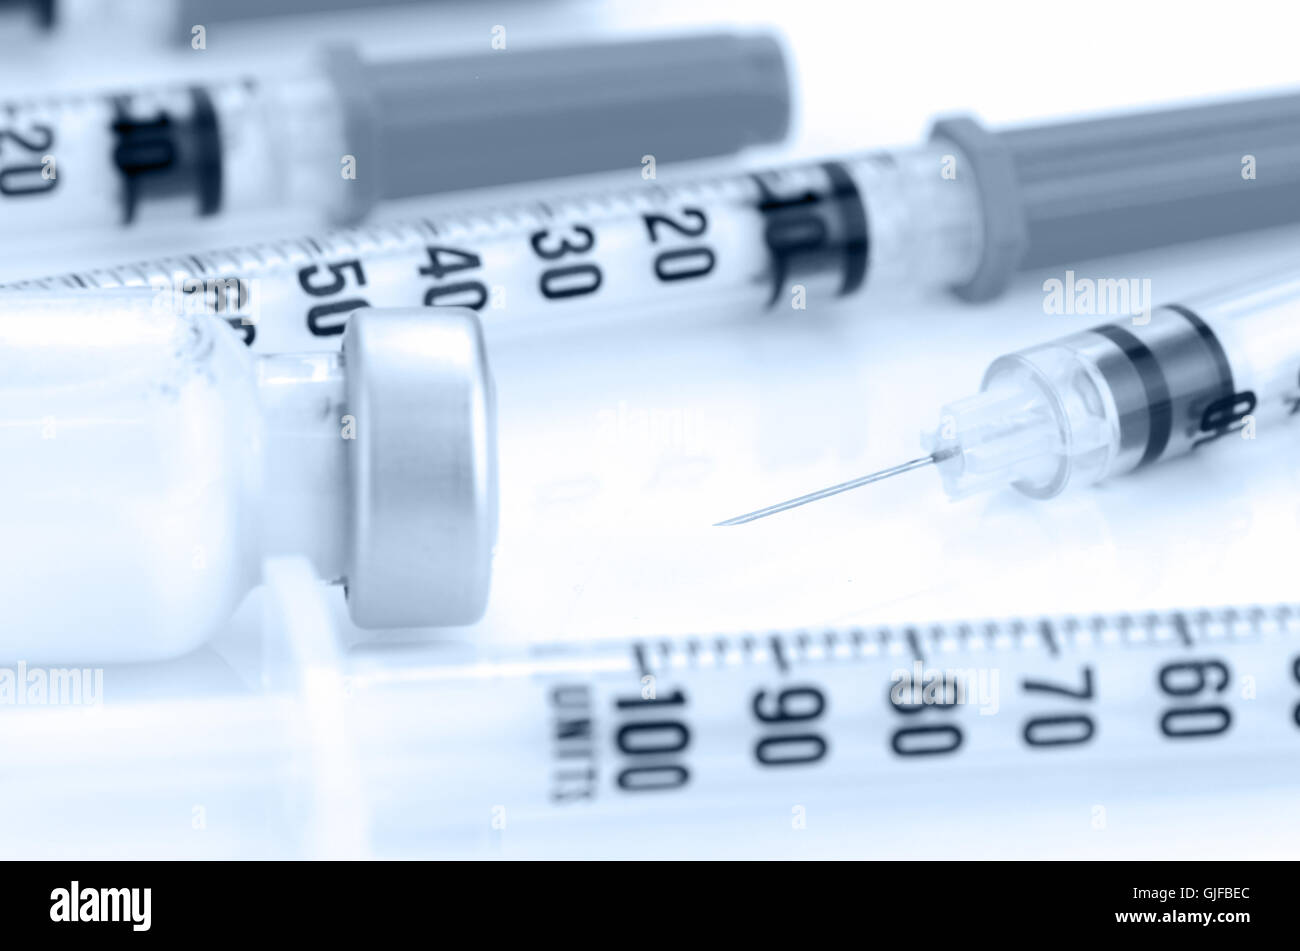 Insuin Injektion und Insulin Spritze mit 29G. Nadel auf weißem Hintergrund. Stockfoto